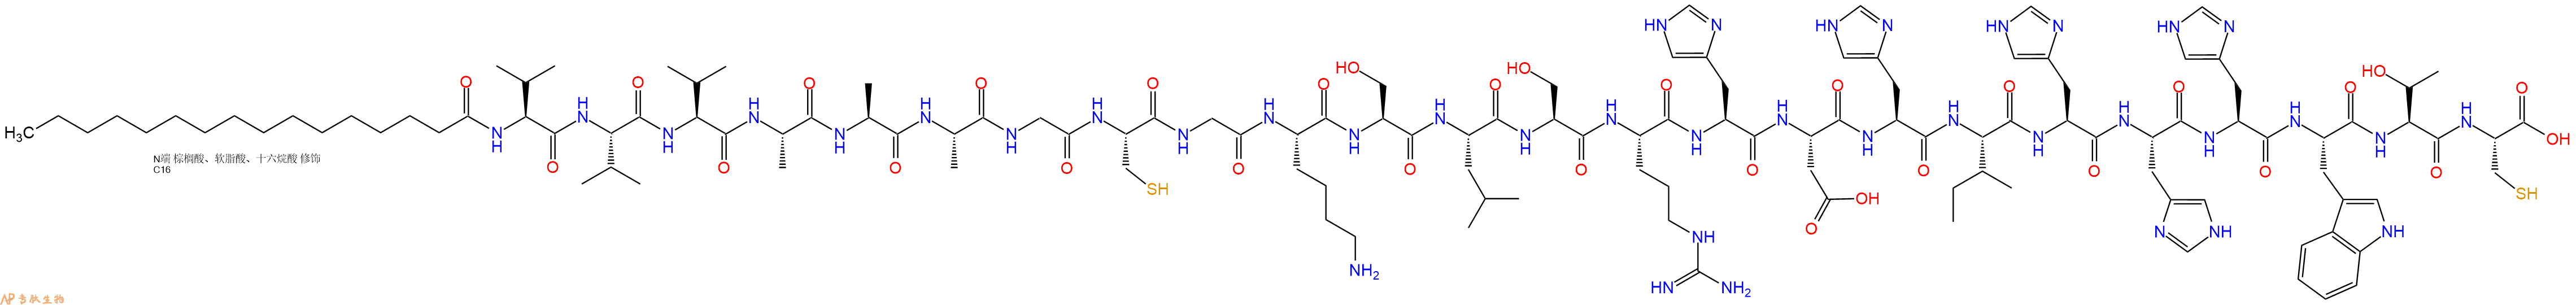 专肽生物产品棕榈酸-VVVAAAGCGKSLSRHDHIHHHWTC